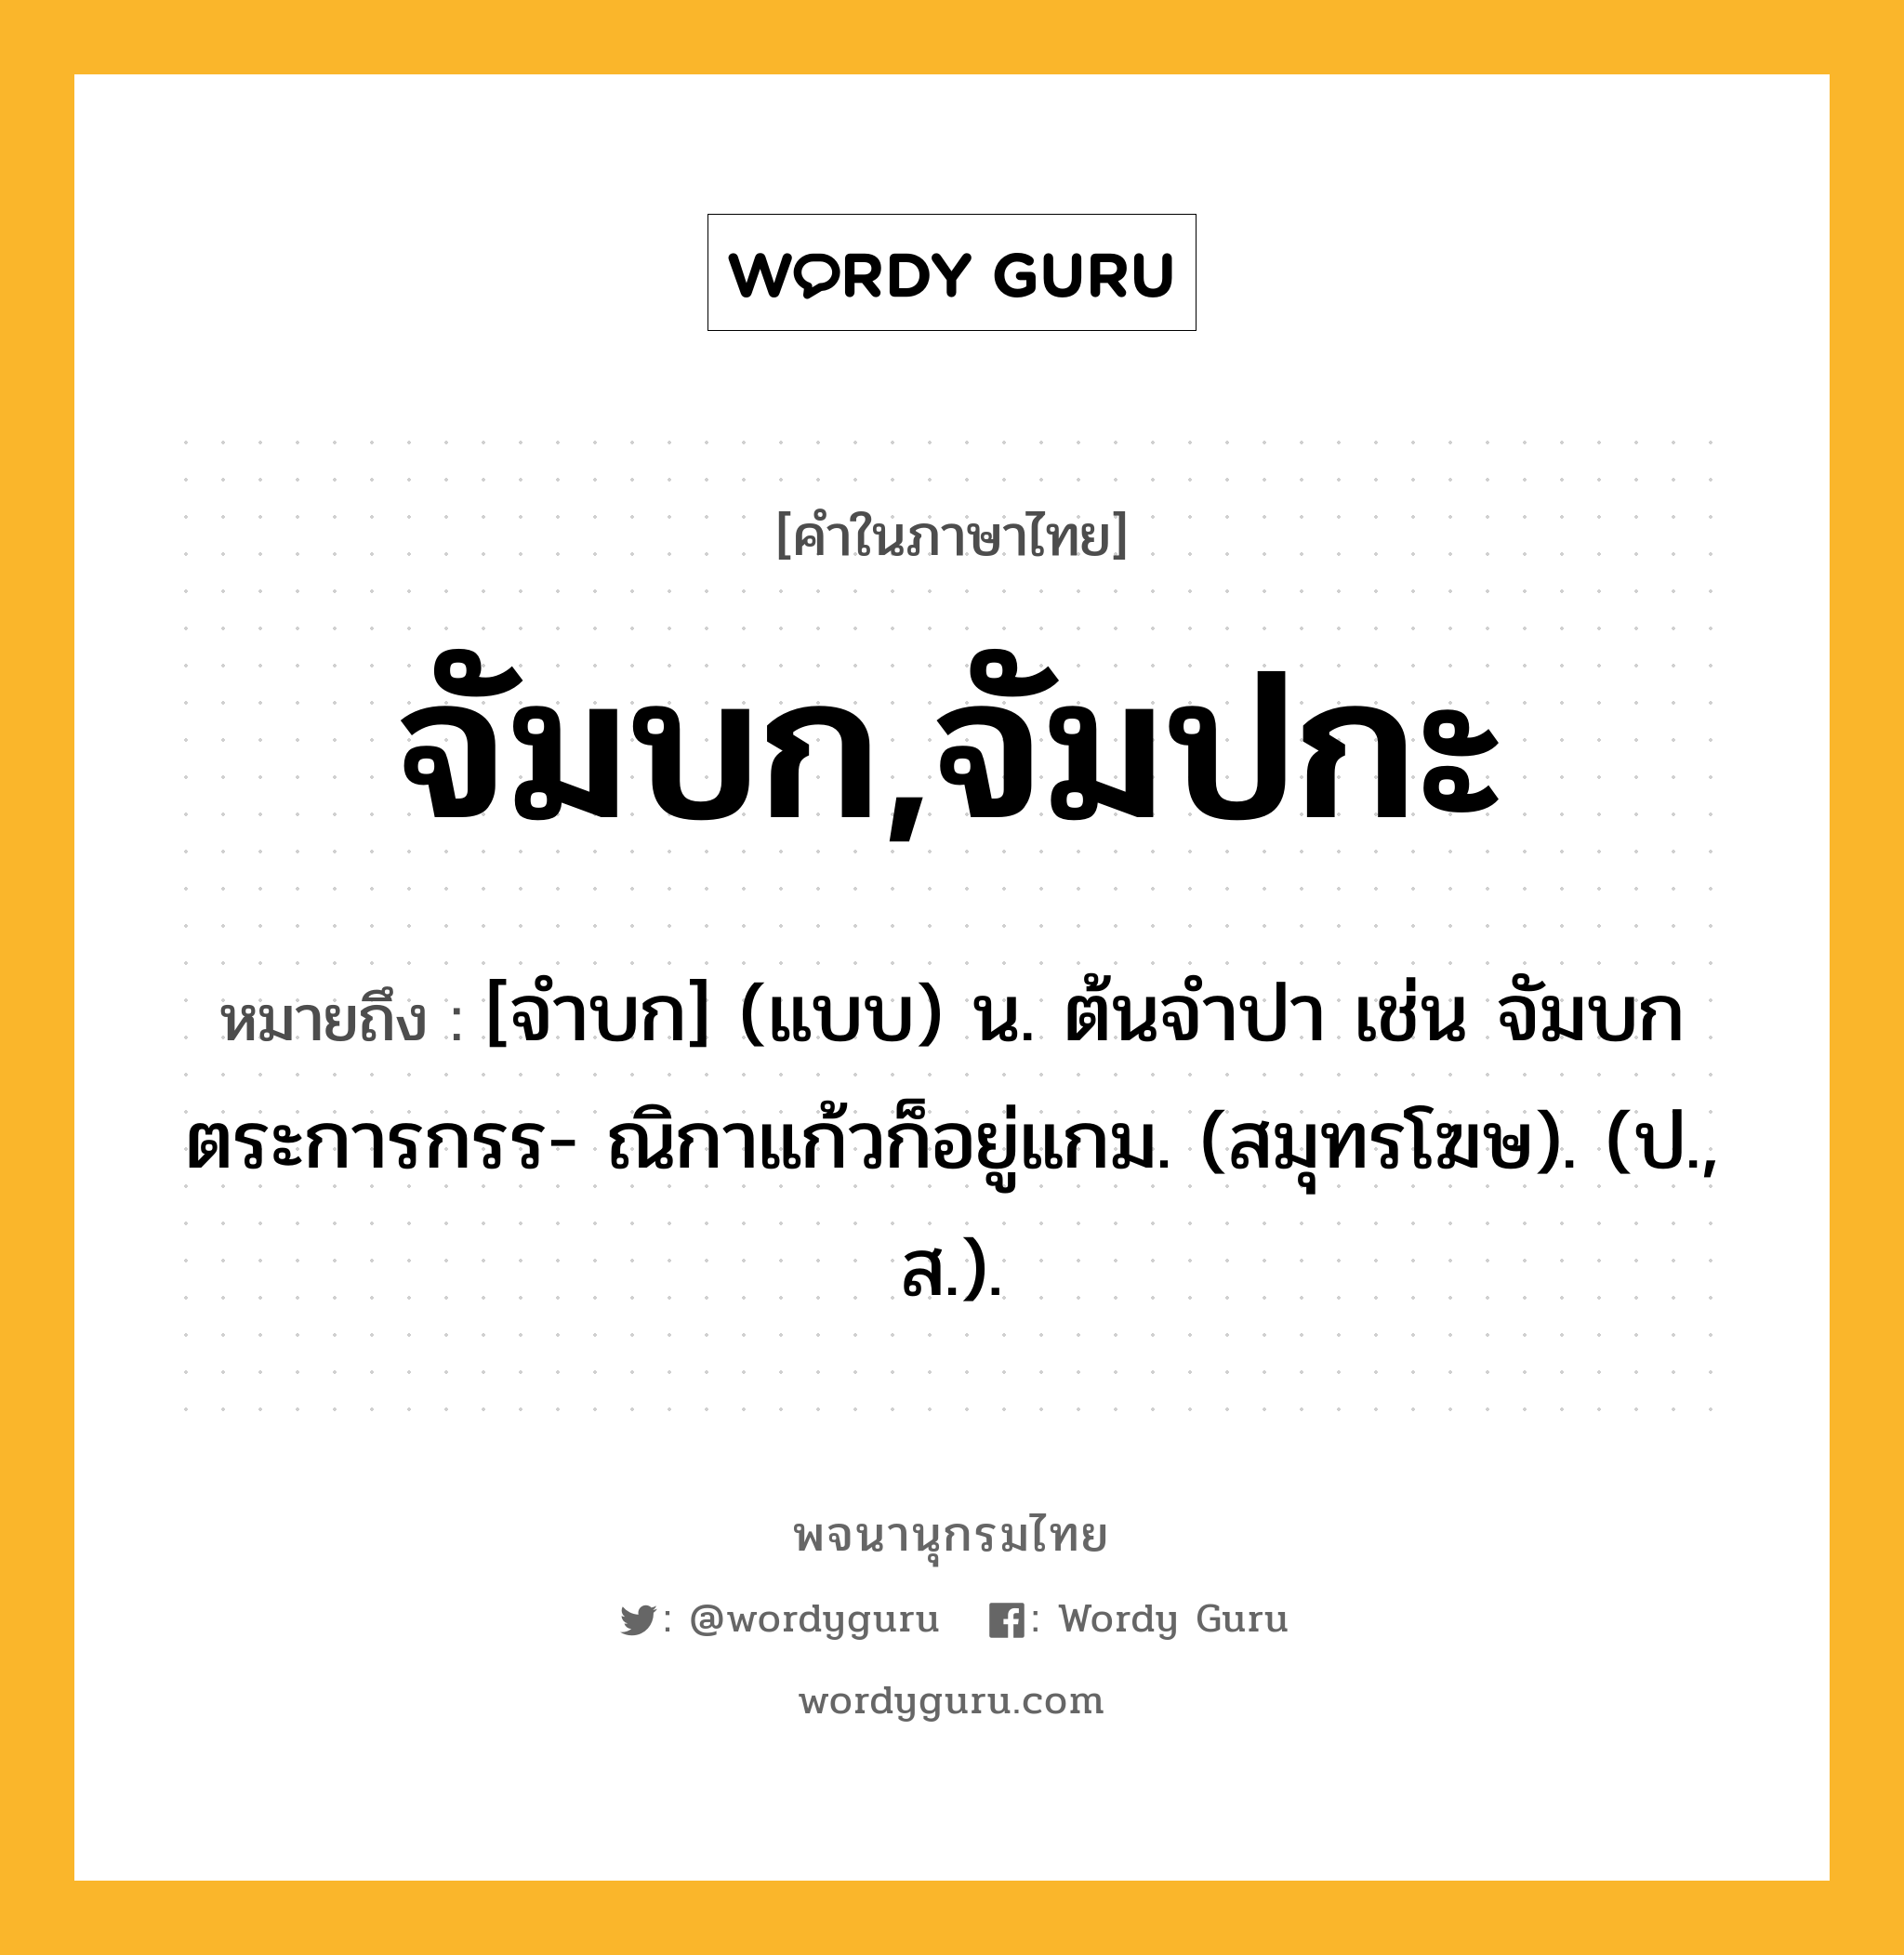 จัมบก,จัมปกะ หมายถึงอะไร?, คำในภาษาไทย จัมบก,จัมปกะ หมายถึง [จําบก] (แบบ) น. ต้นจําปา เช่น จัมบกตระการกรร- ณิกาแก้วก็อยู่แกม. (สมุทรโฆษ). (ป., ส.).